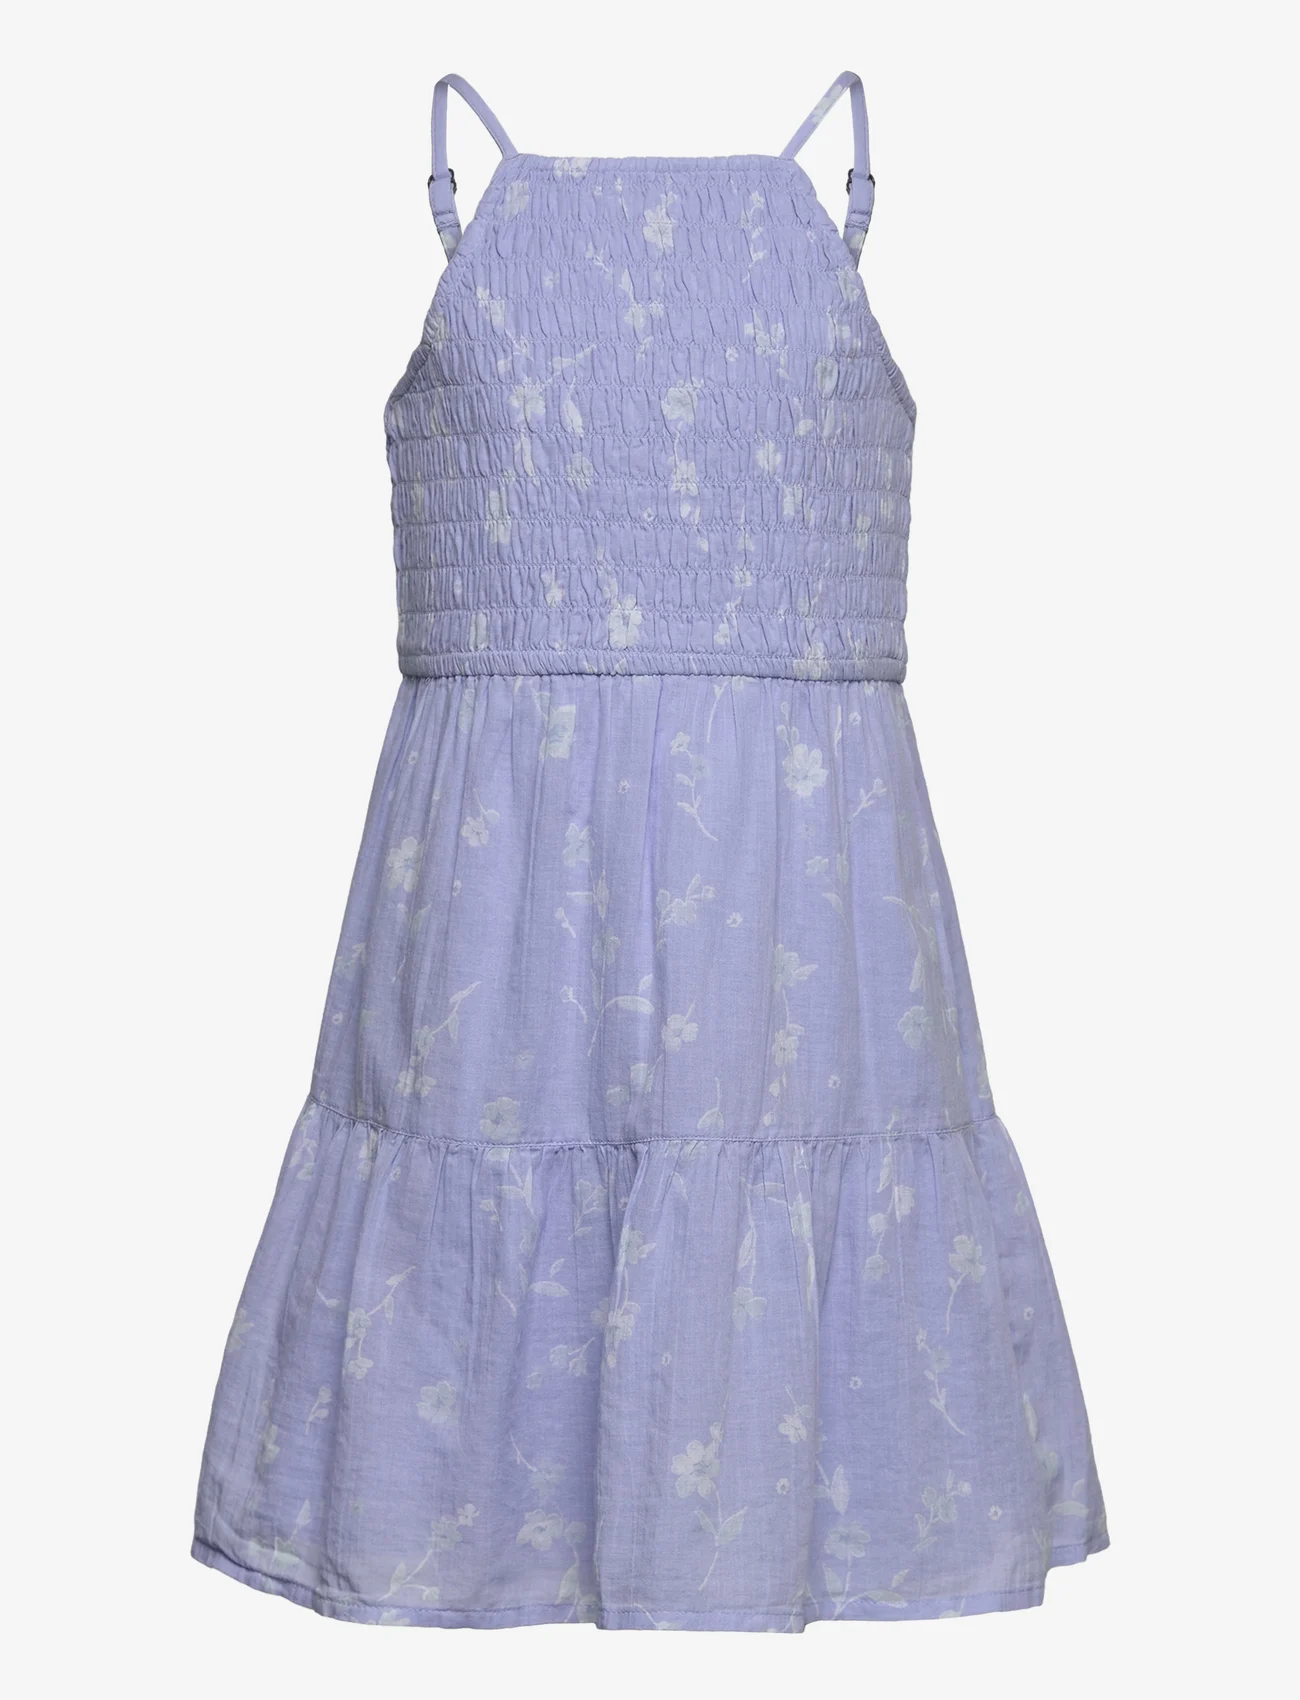 Abercrombie & Fitch - kids GIRLS DRESSES - kortärmade vardagsklänningar - blue floral - 0